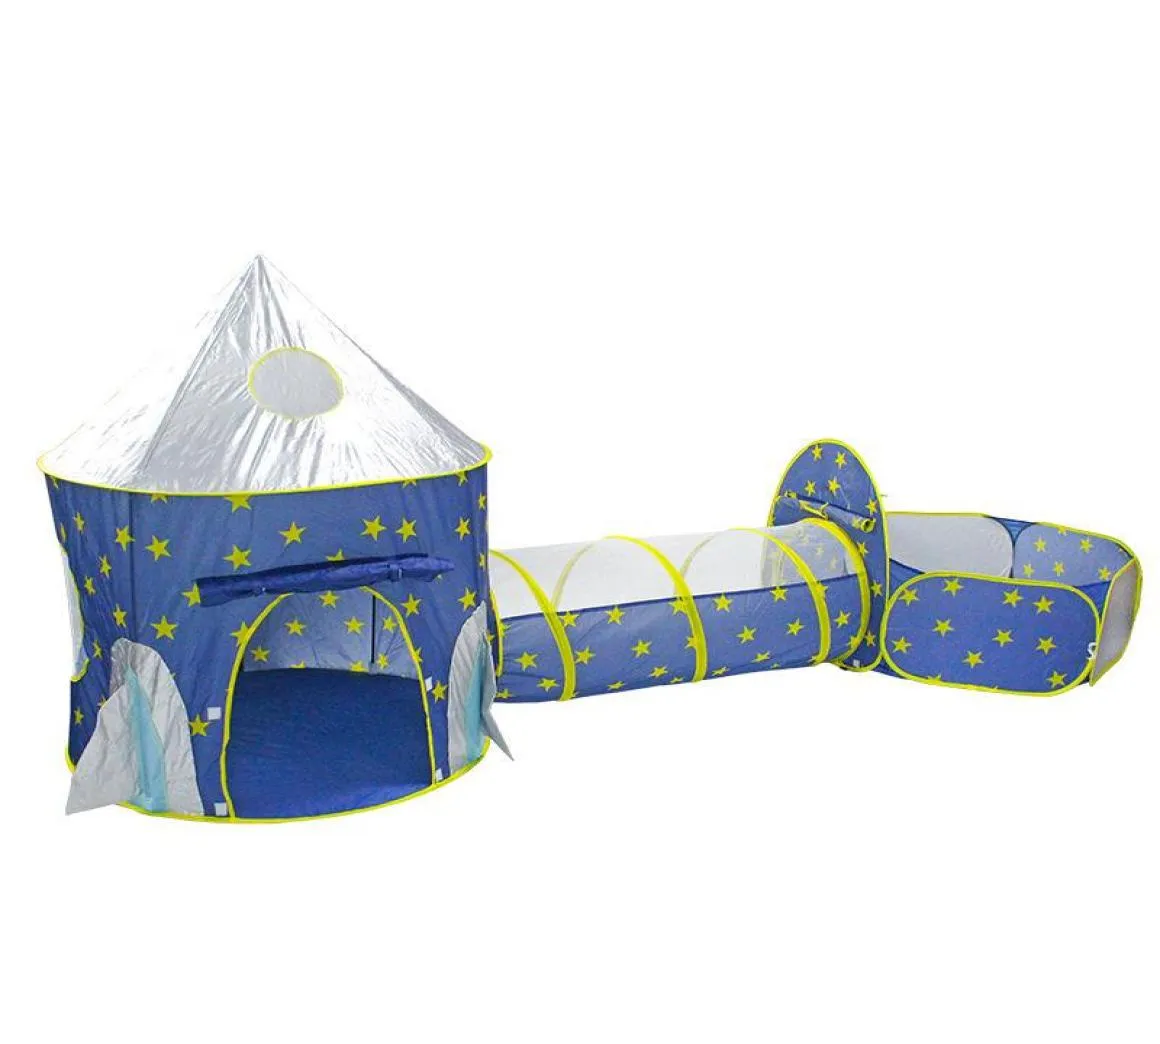 Dobrável 3 em 1 espaçonave infantil039s tenda bebê wigwam tipi piscina seca bola de foguete para crianças tendas e abrigos6934983